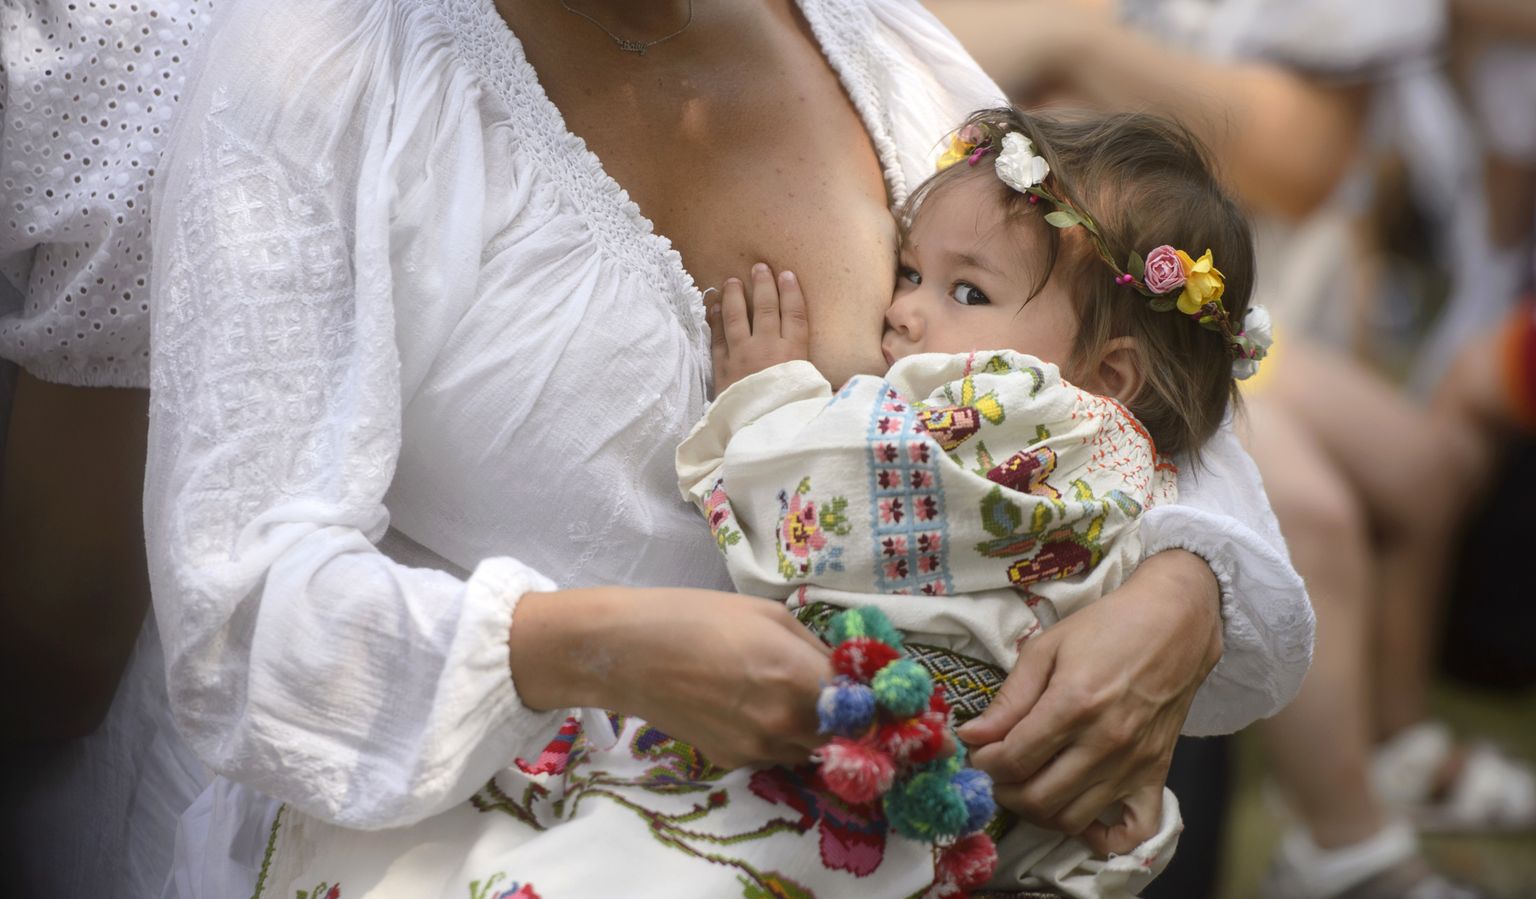 Naine 8-kuuse tütre Anastasiaga rahvusvahelise rinnagatoitmise nädala raames korraldatud üritusel Rumeenias Bukarestis.